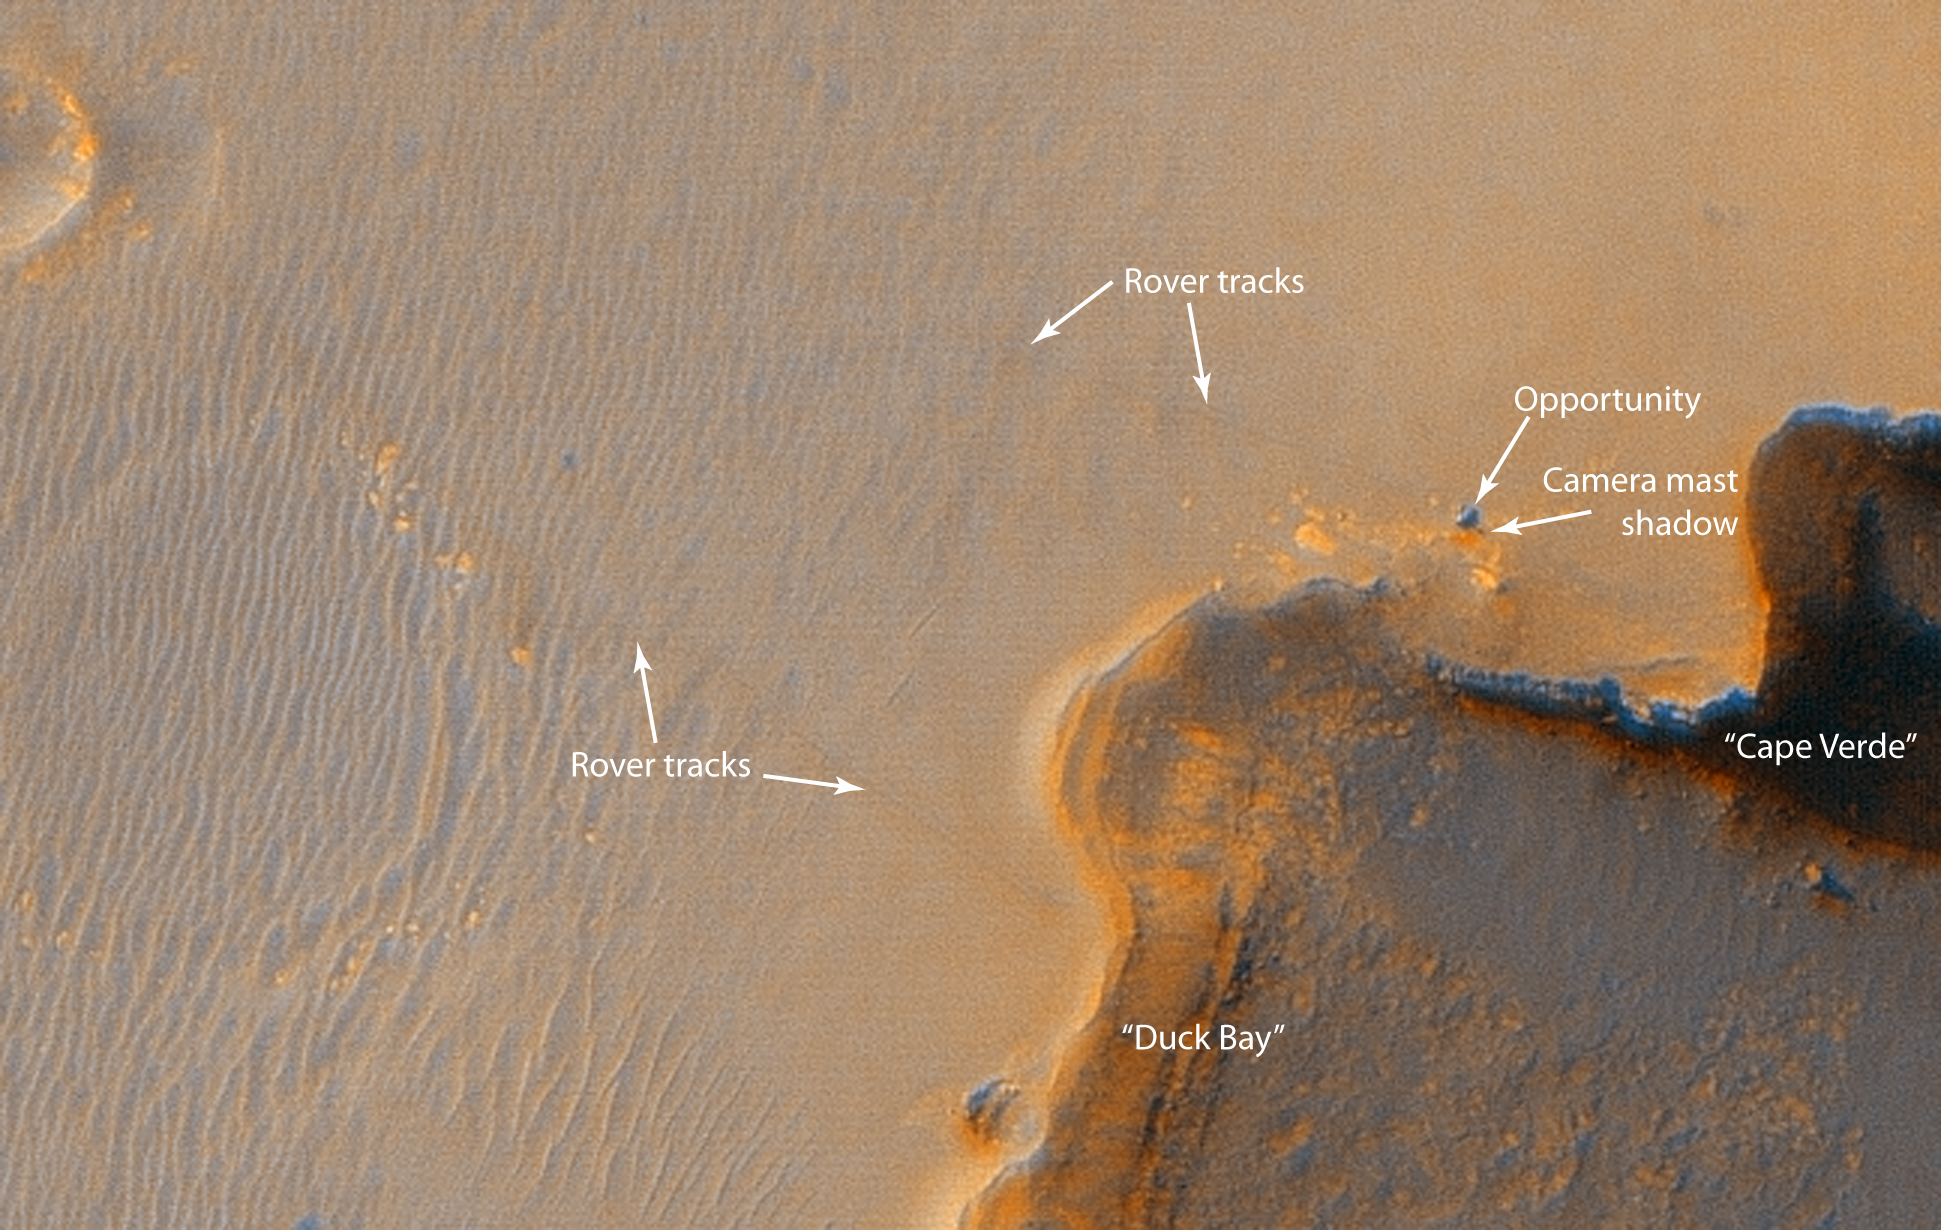 Marsohod okolo kratera Viktoriya: snimok s orbity